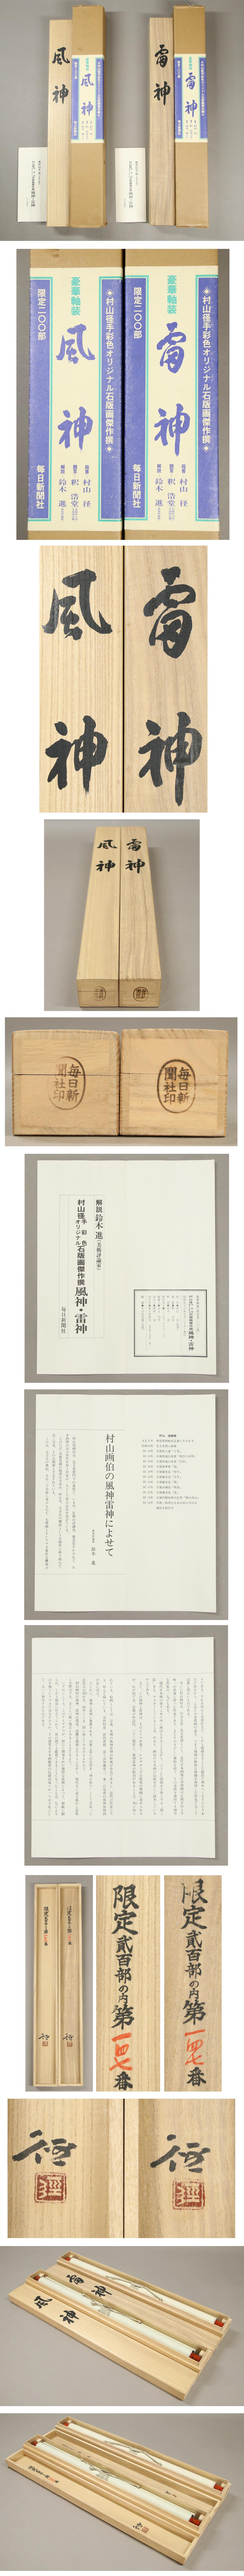 【日本製安い】◆村山徑◆双幅◆風神◆雷神◆新潟県◆限定200部◆手彩色◆石版画◆掛軸◆k830 人物、菩薩